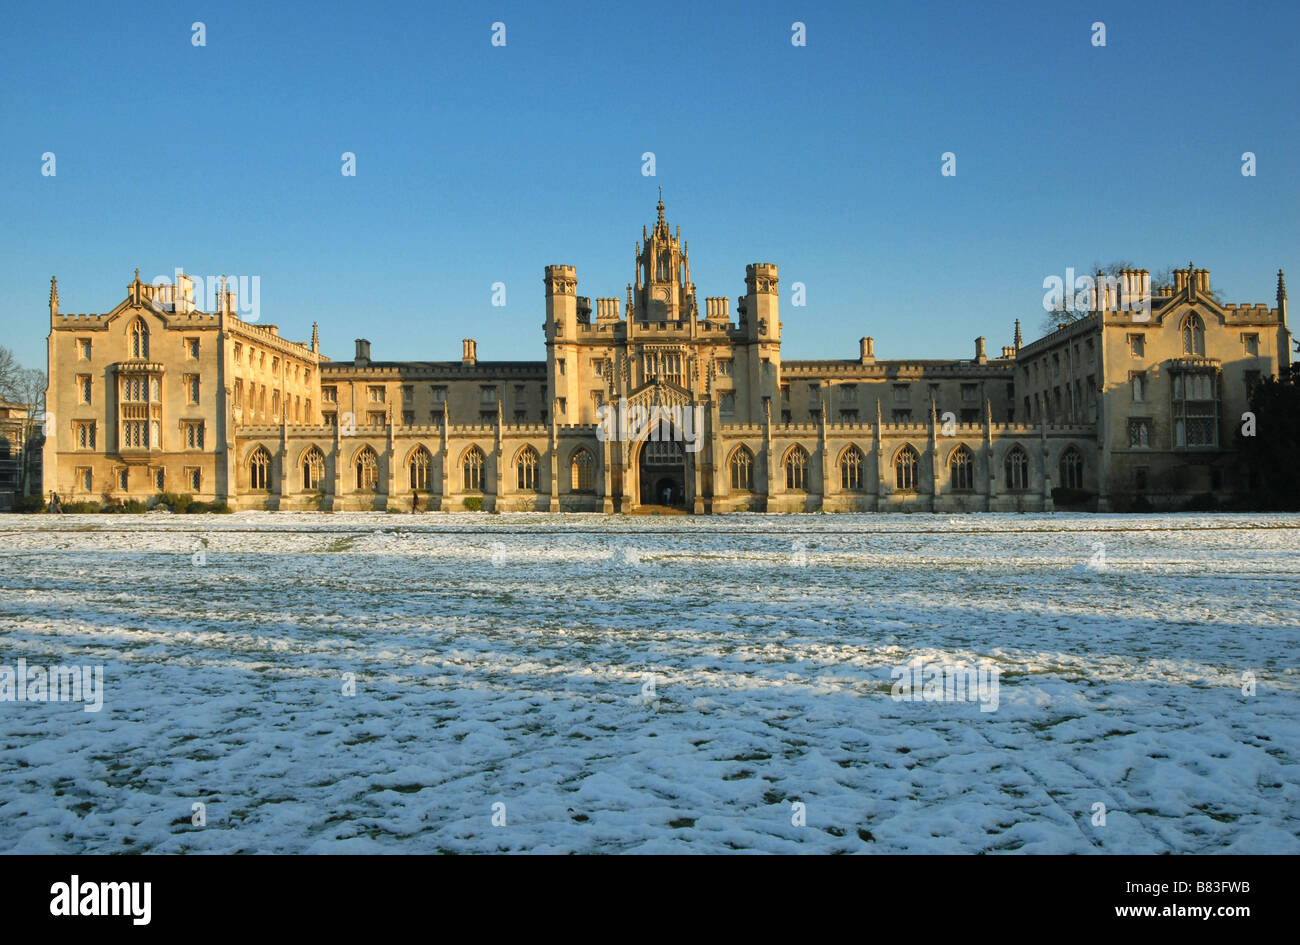 La nouvelle cour de St John's College de Cambridge après un hiver neige Banque D'Images